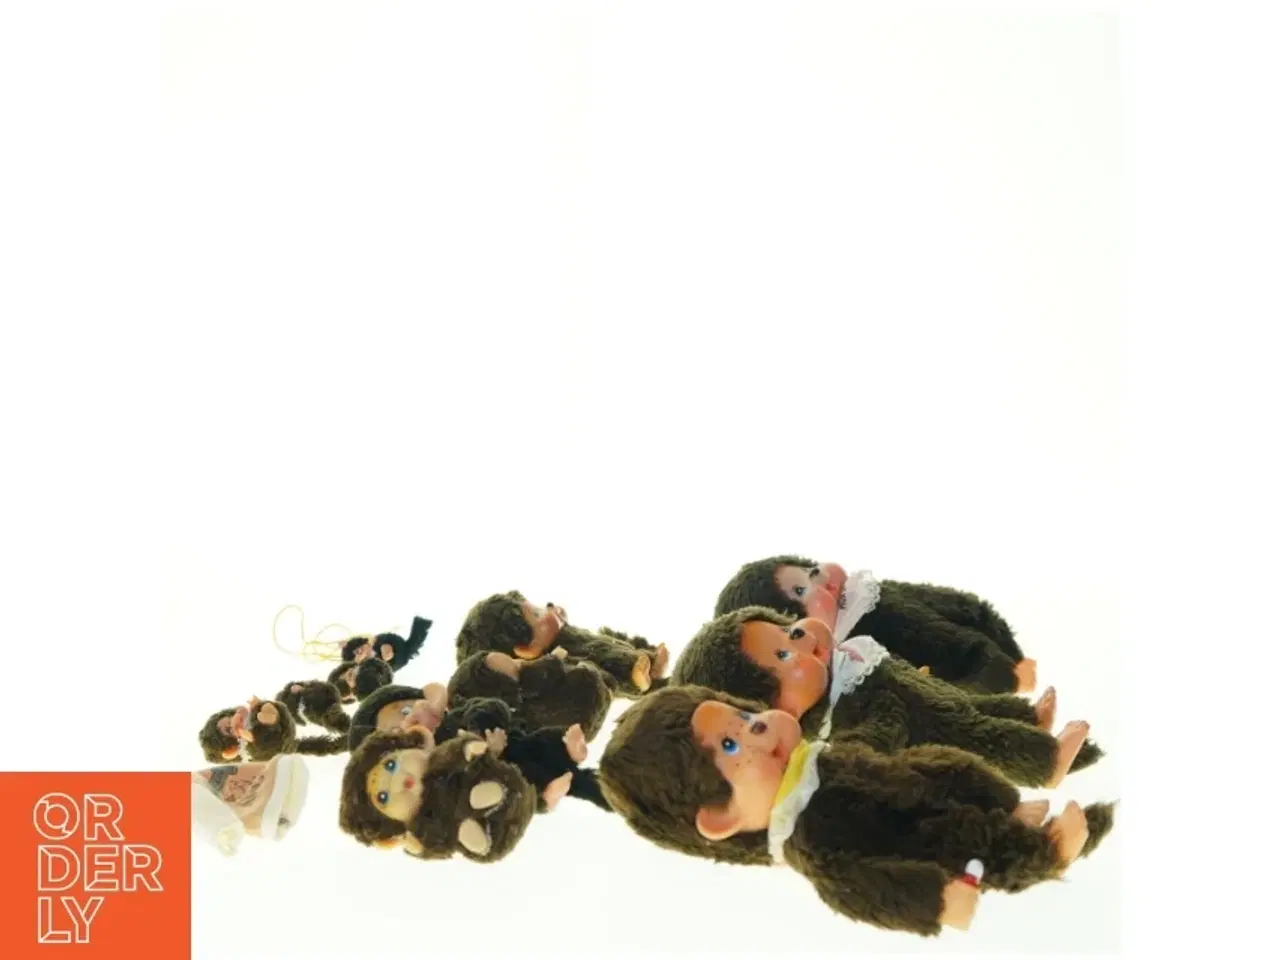 Billede 4 - Monchhichi tøjdyr samling fra Monchhichi (str. 18 x 8 cm)